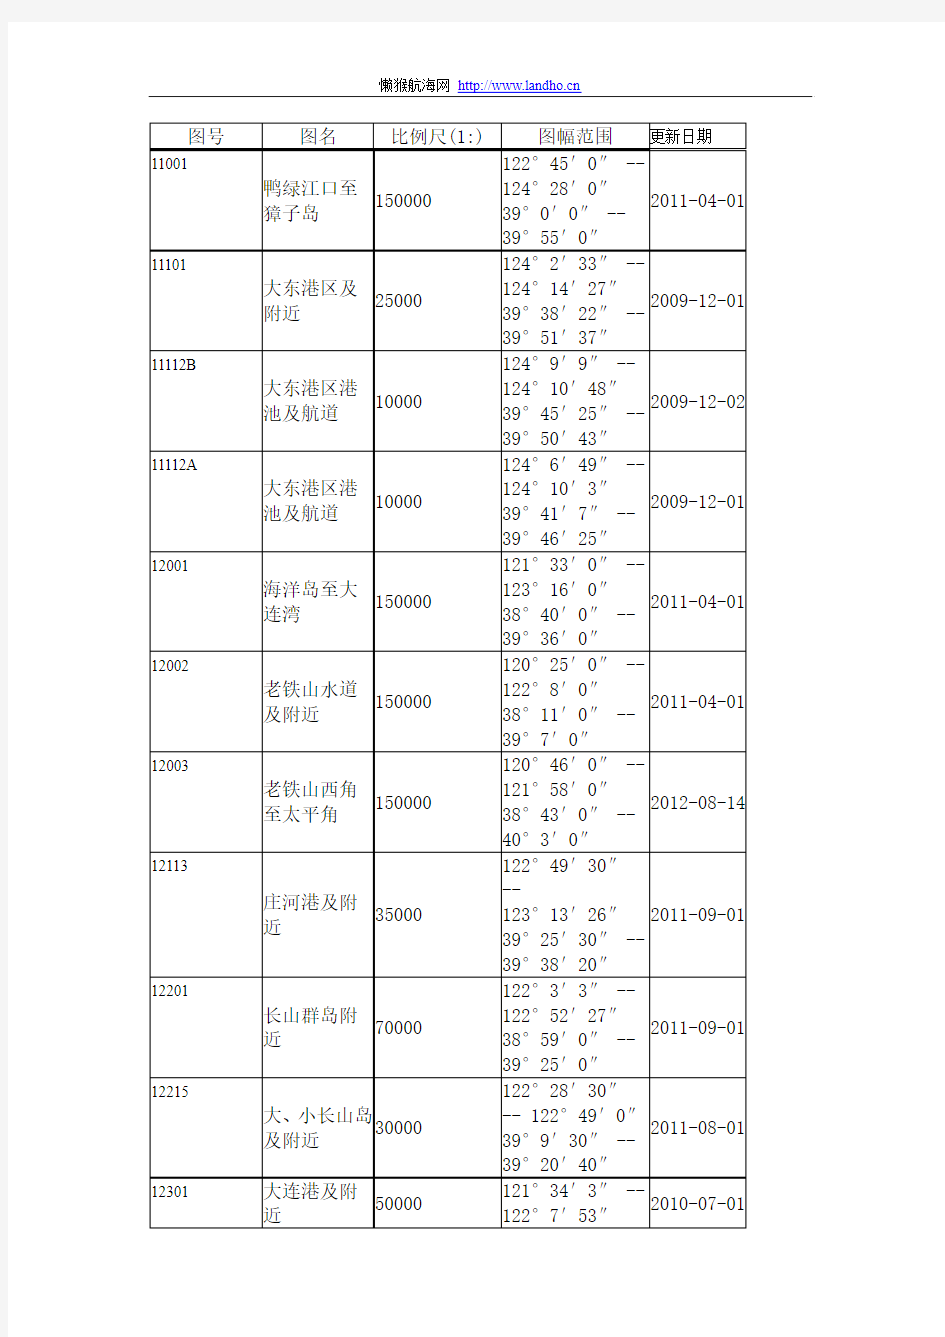 中国海事局纸海图目录更新至2012年11月